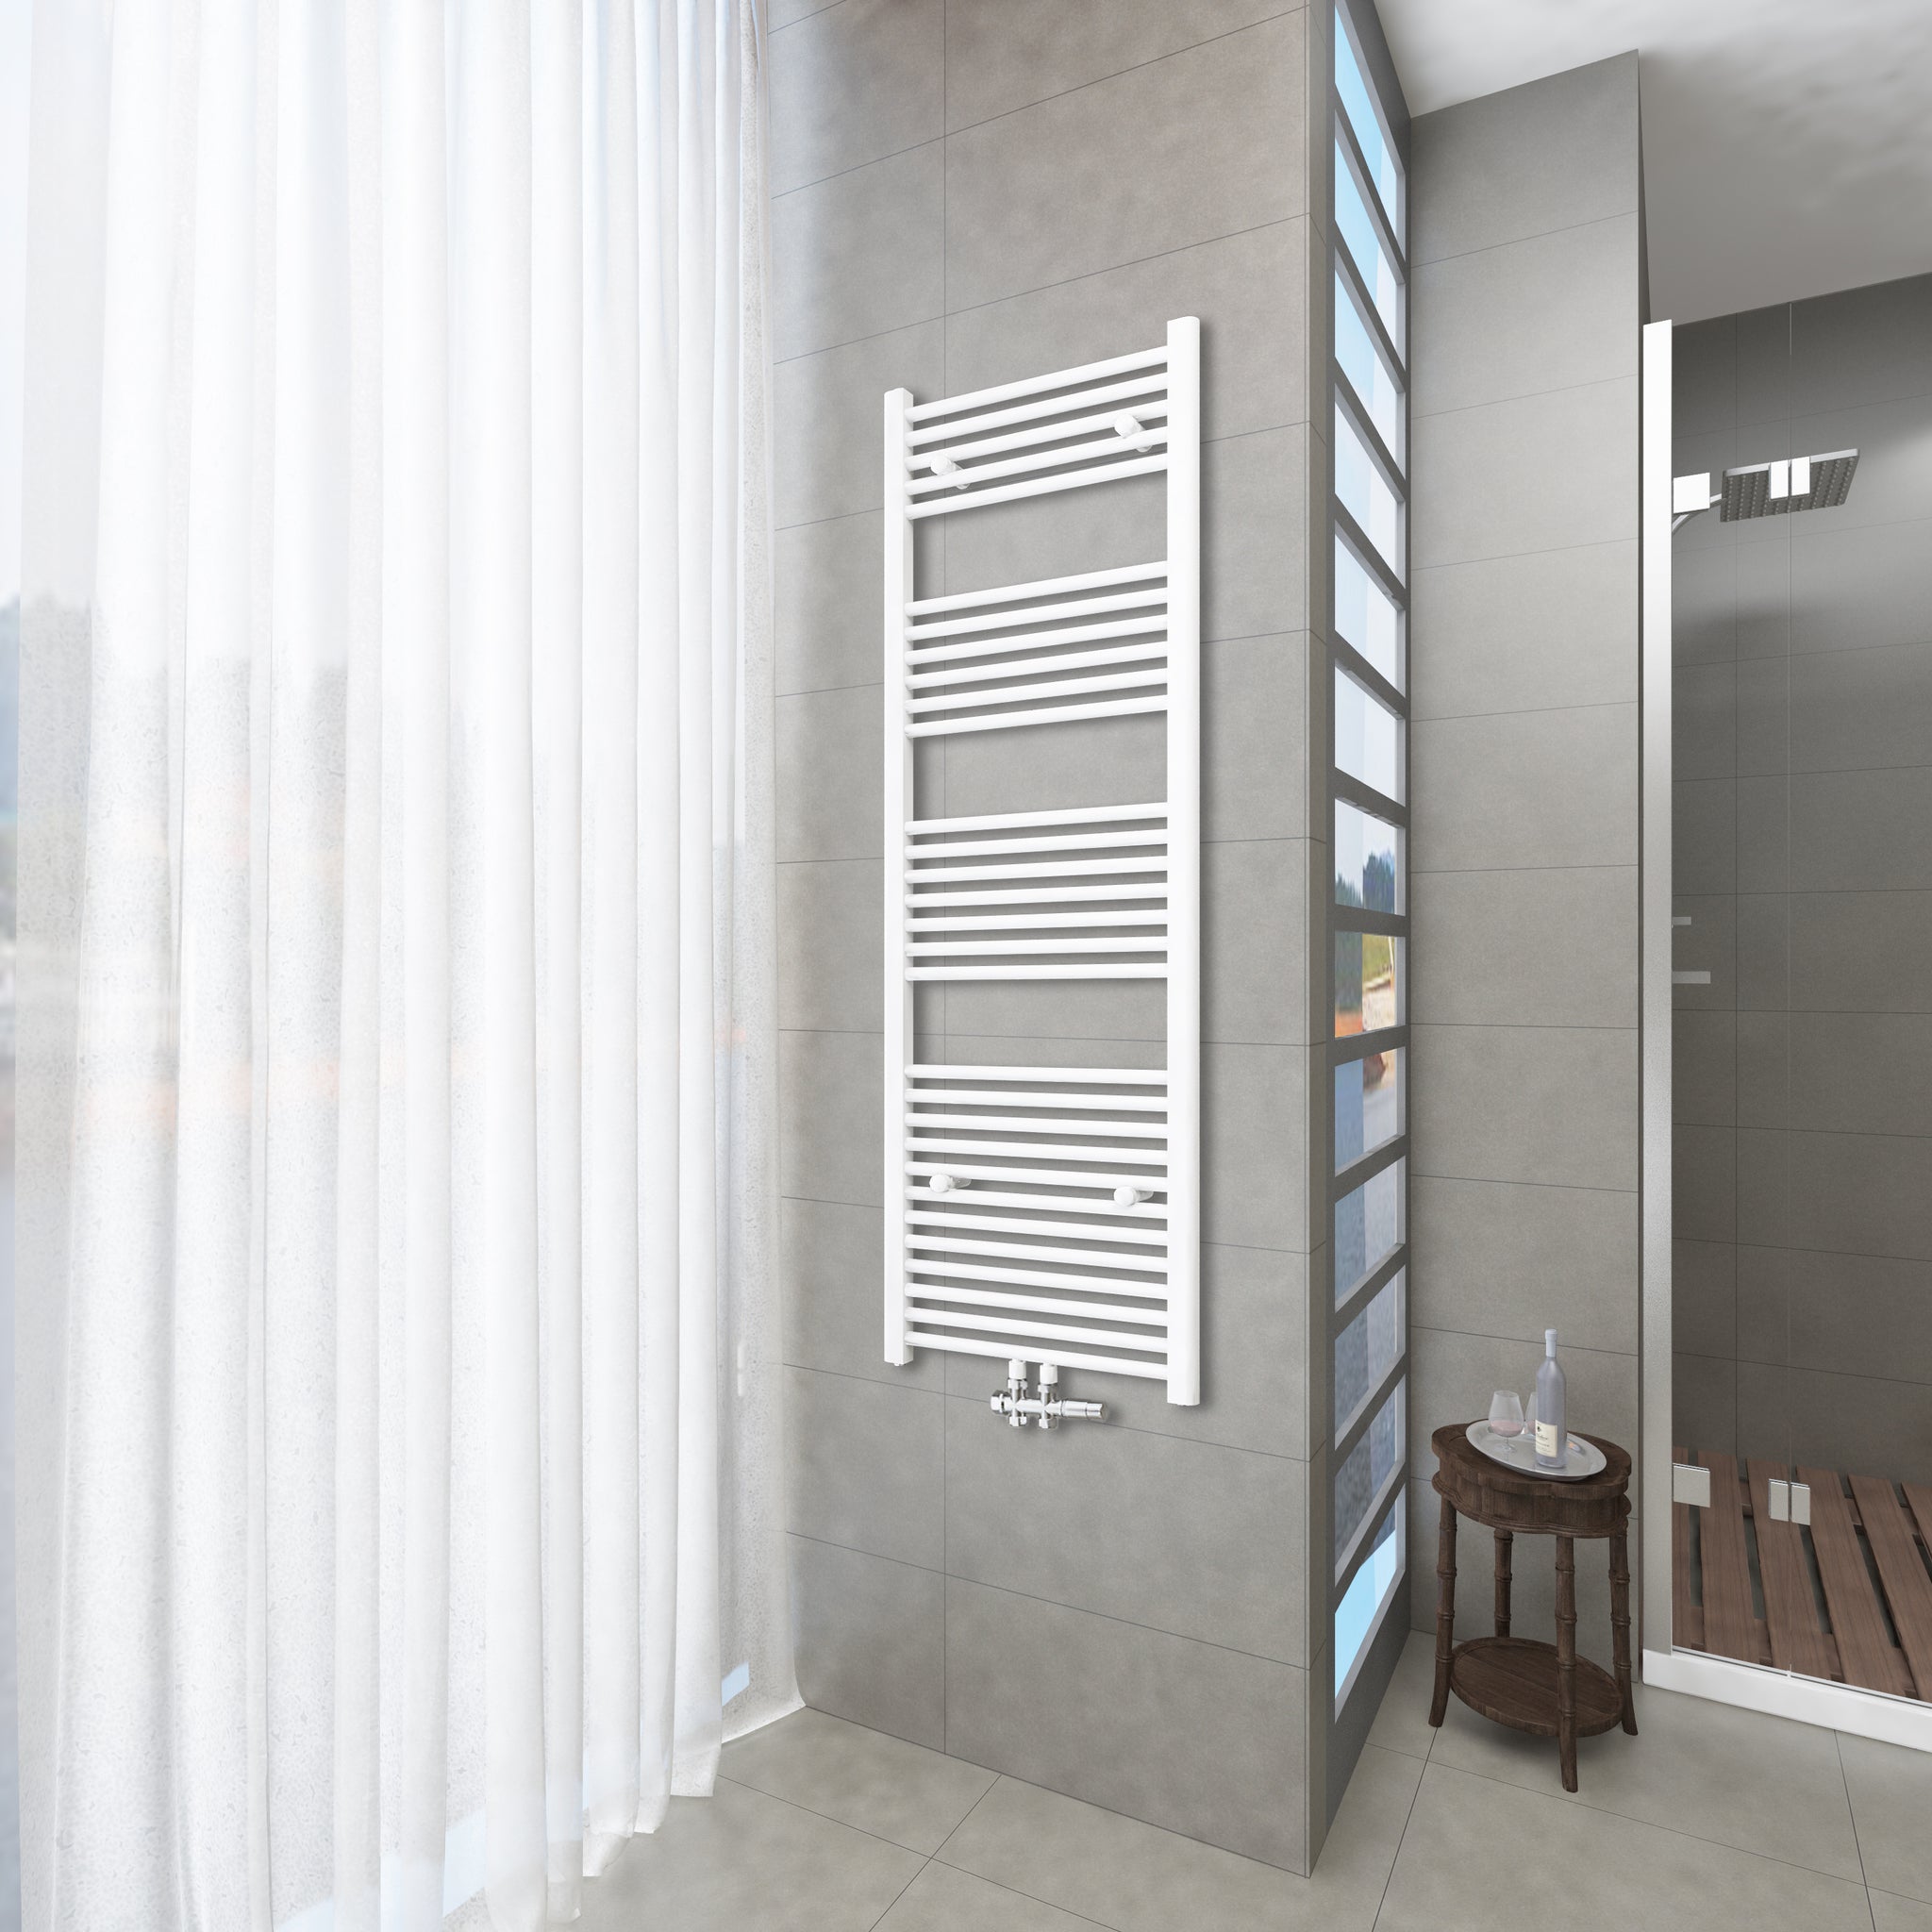 Badheizkörper Weiß - 160x60 CM  Heizkörper und Handtuchtrockner in einem - Mittelanschluss - Rauchfreie Kohleheizung für das Badezimmer